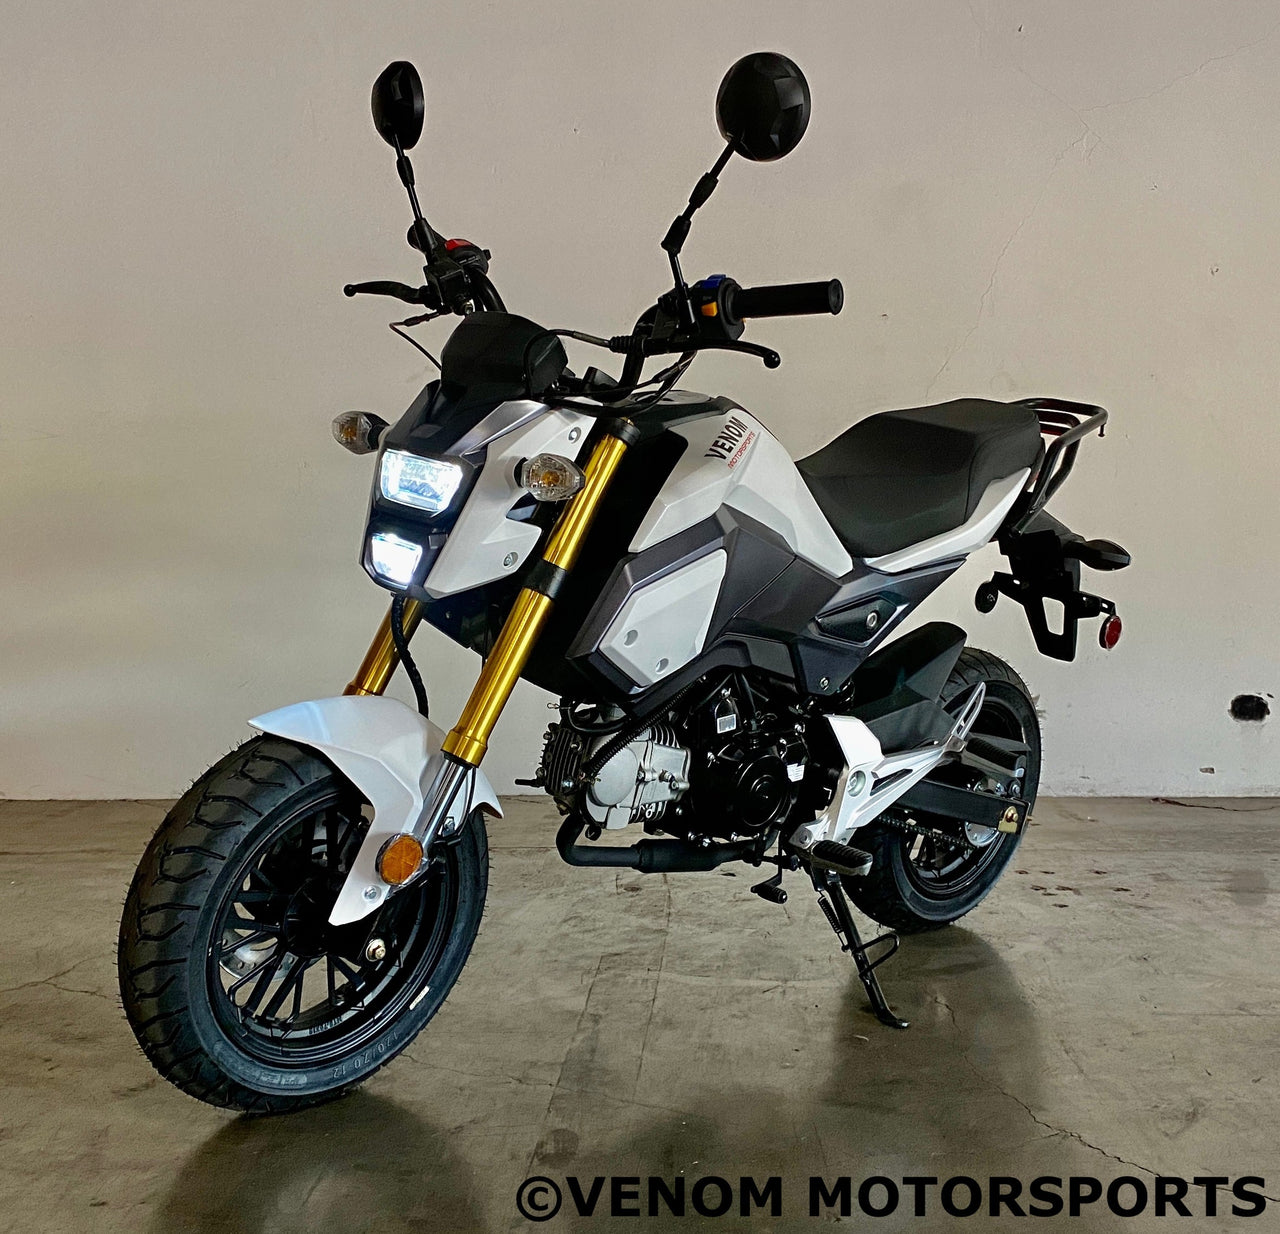 Venom X20 125cc Gen II motorcycle - white